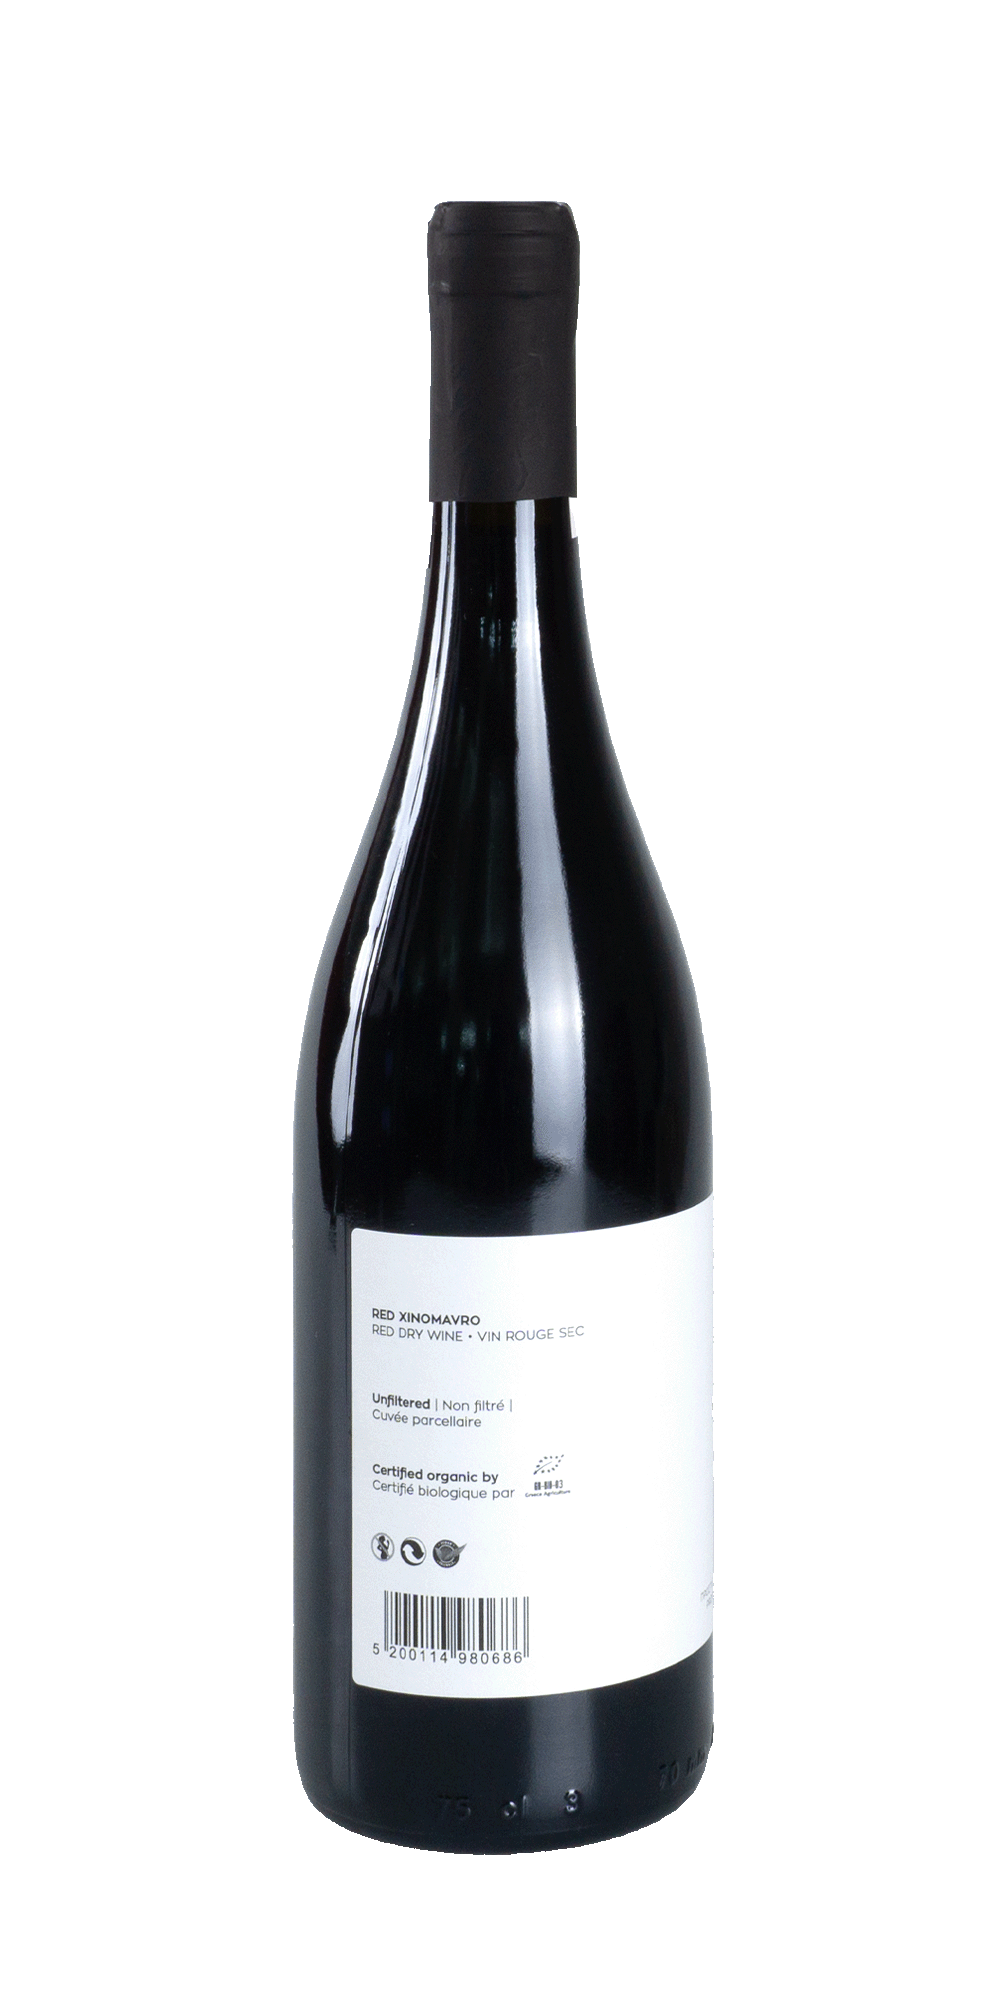 Red Xinomavro Single Vineyard BIO 2017 - Taralas Winery